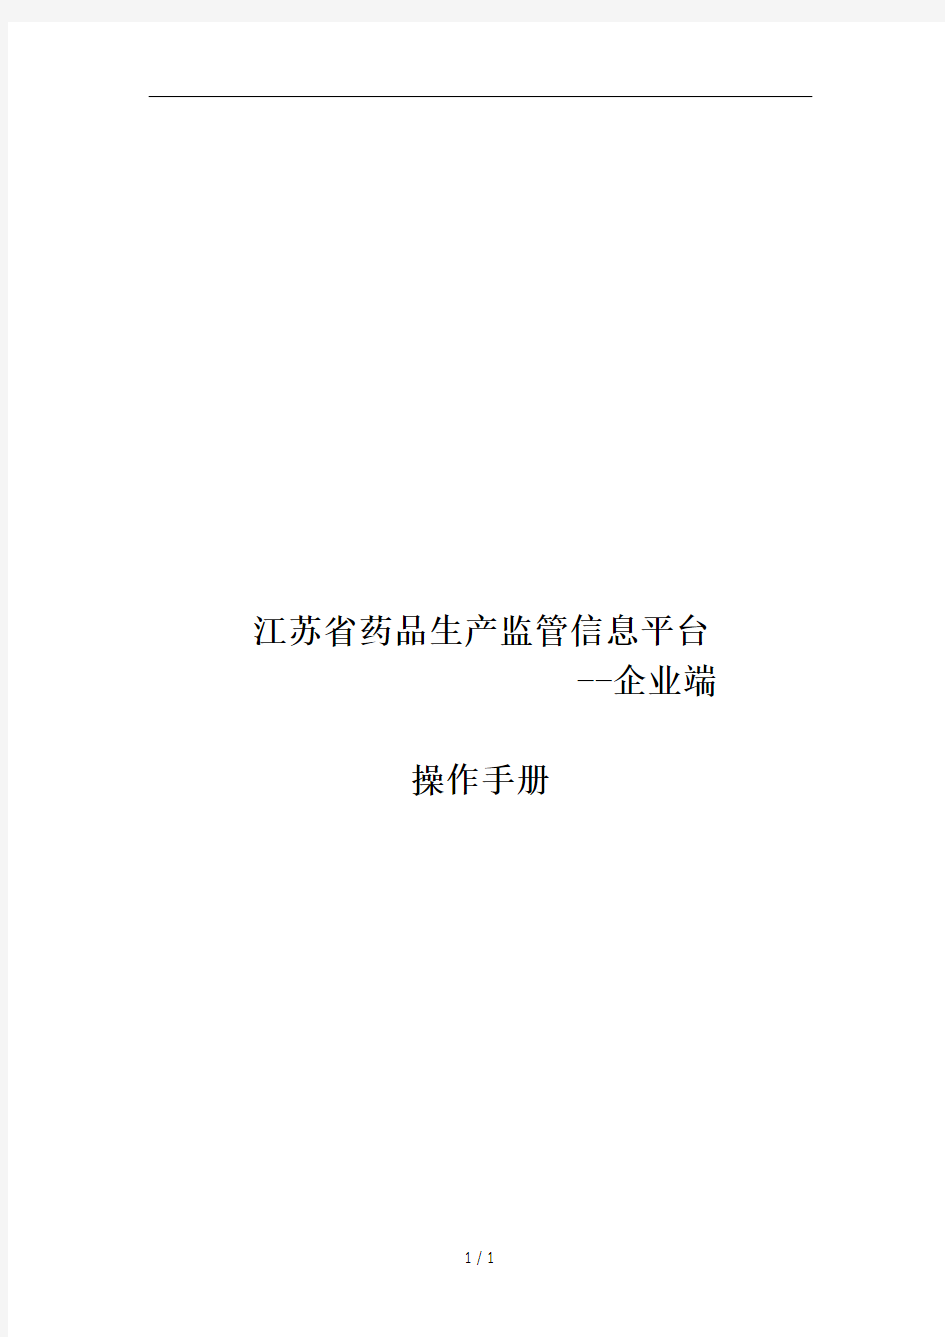 江苏省药品生产监管信息平台(企业端)操作手册